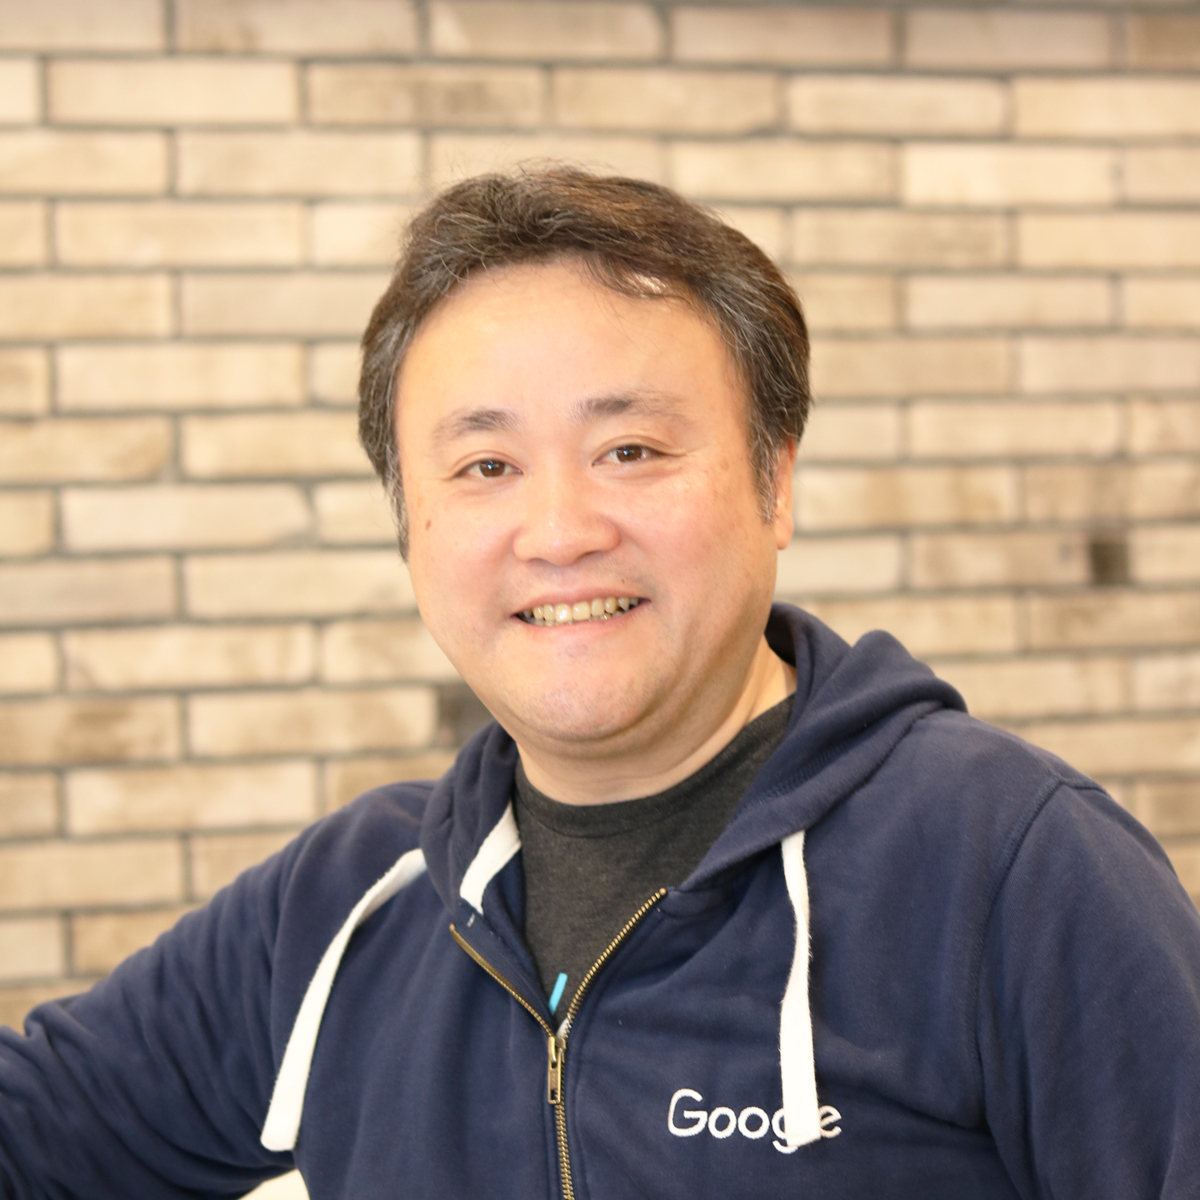 アンダーセンコンサルティング（現アクセンチュア）で数々の SI 業務に携わり、日本人として初めてGoogle Appsスペシャリスト認定プログラム「Google Apps Certified Development Specialist」を取得した吉積礼敏が代表取締役会長を務めています。